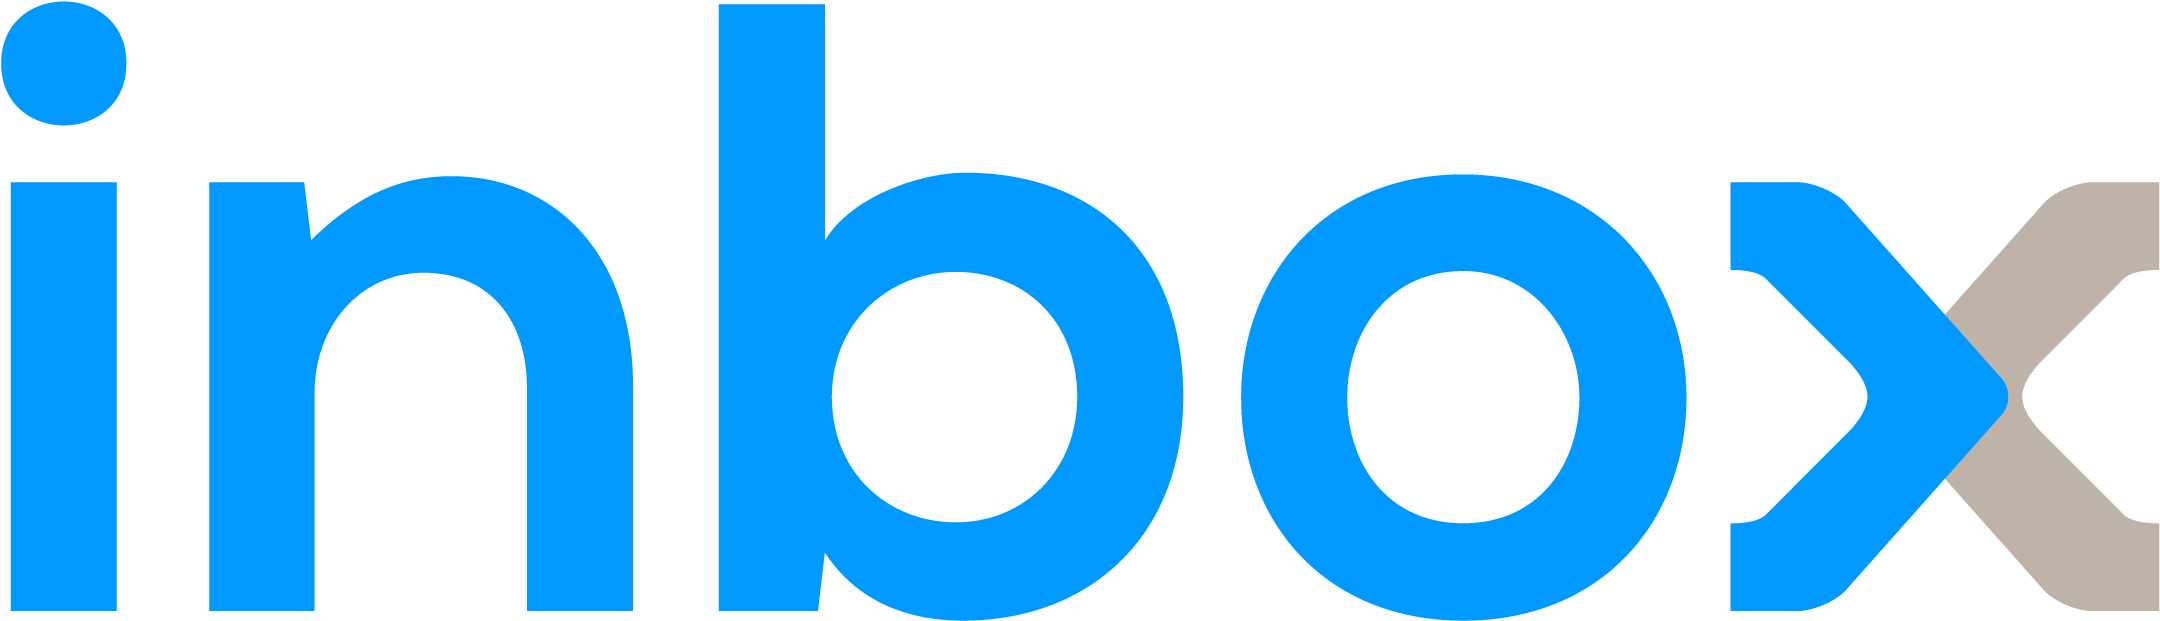 Inbox Logo Design PNG image